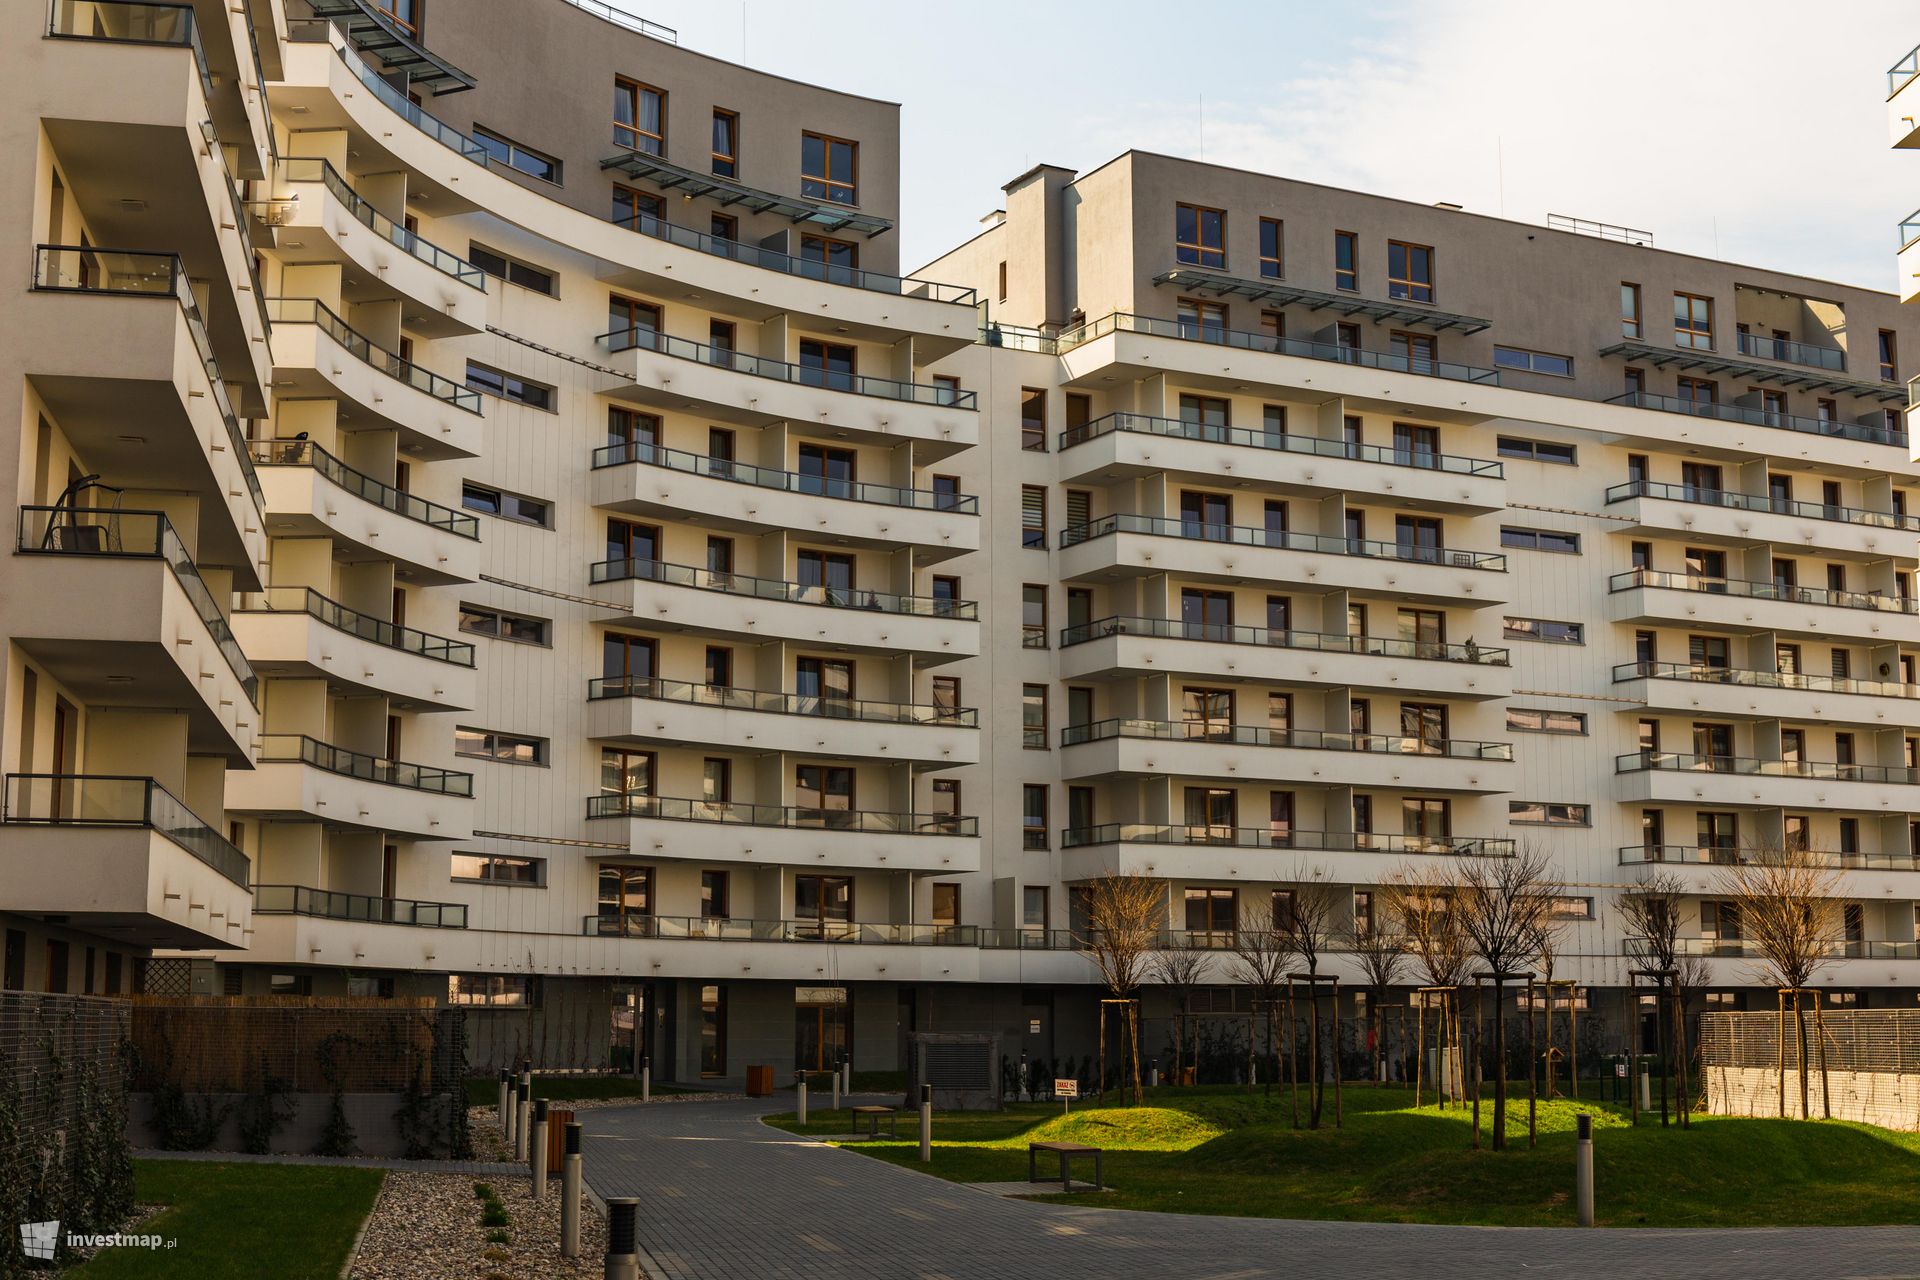 Koszty najmu mieszkania w dużych miastach w Polsce ciągle rosną